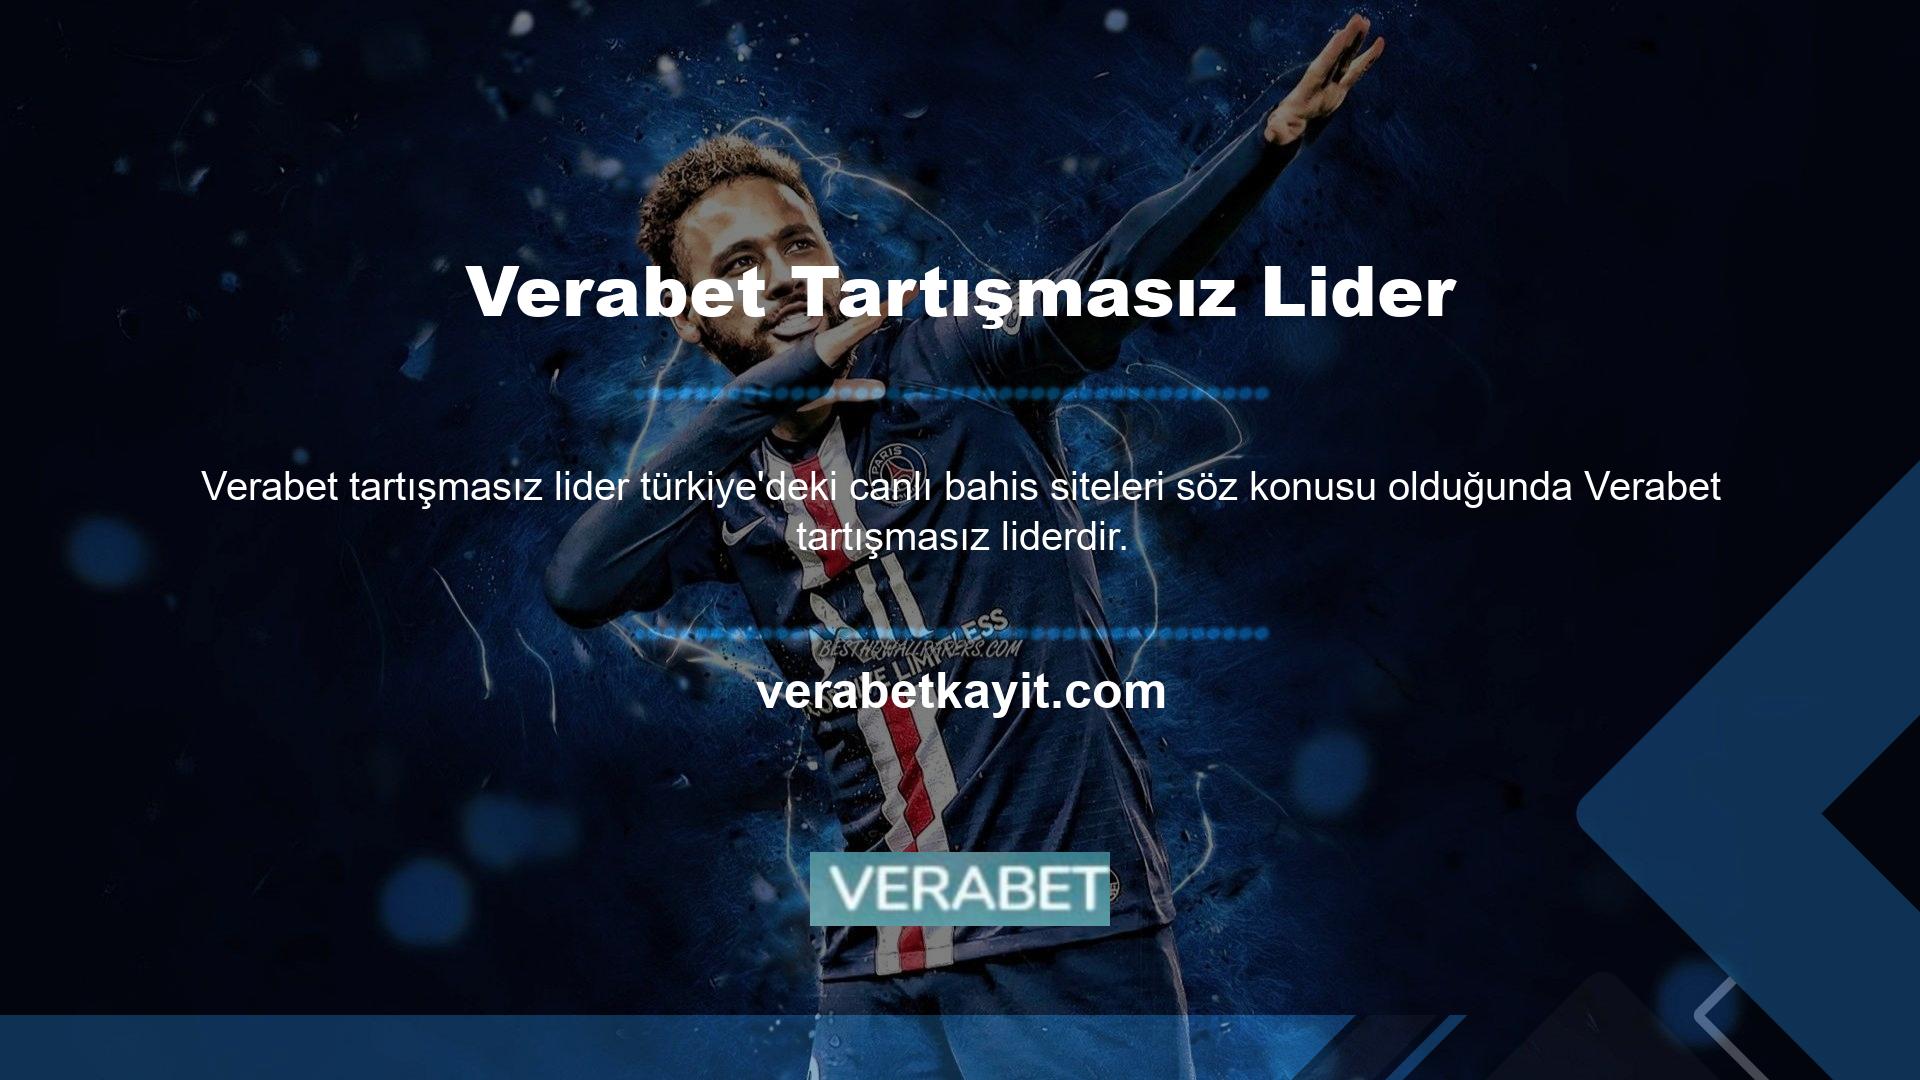 Verabet Türkiye'deki en çok bahis sitesinin işletmecisidir ve bu alanda ilerleme kaydetmektedir